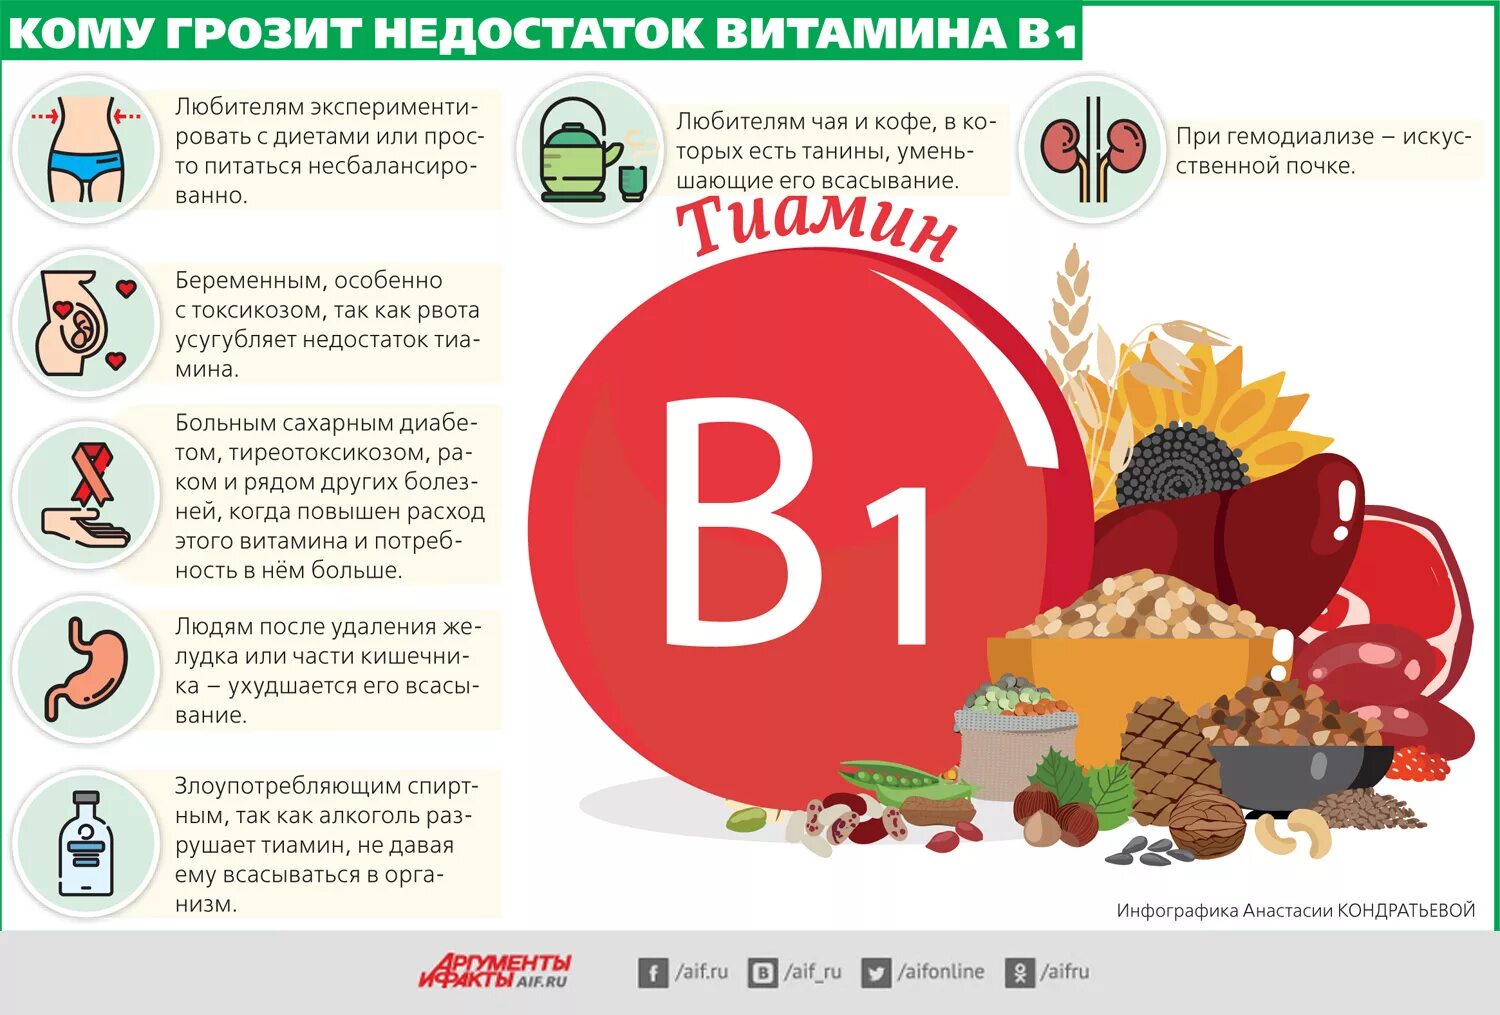 Б6 до еды или после. Витамин в1 дефицит болезни. Недостаток витамина b1. Симптомы витамина b1. Признаки недостатка витамина b1.